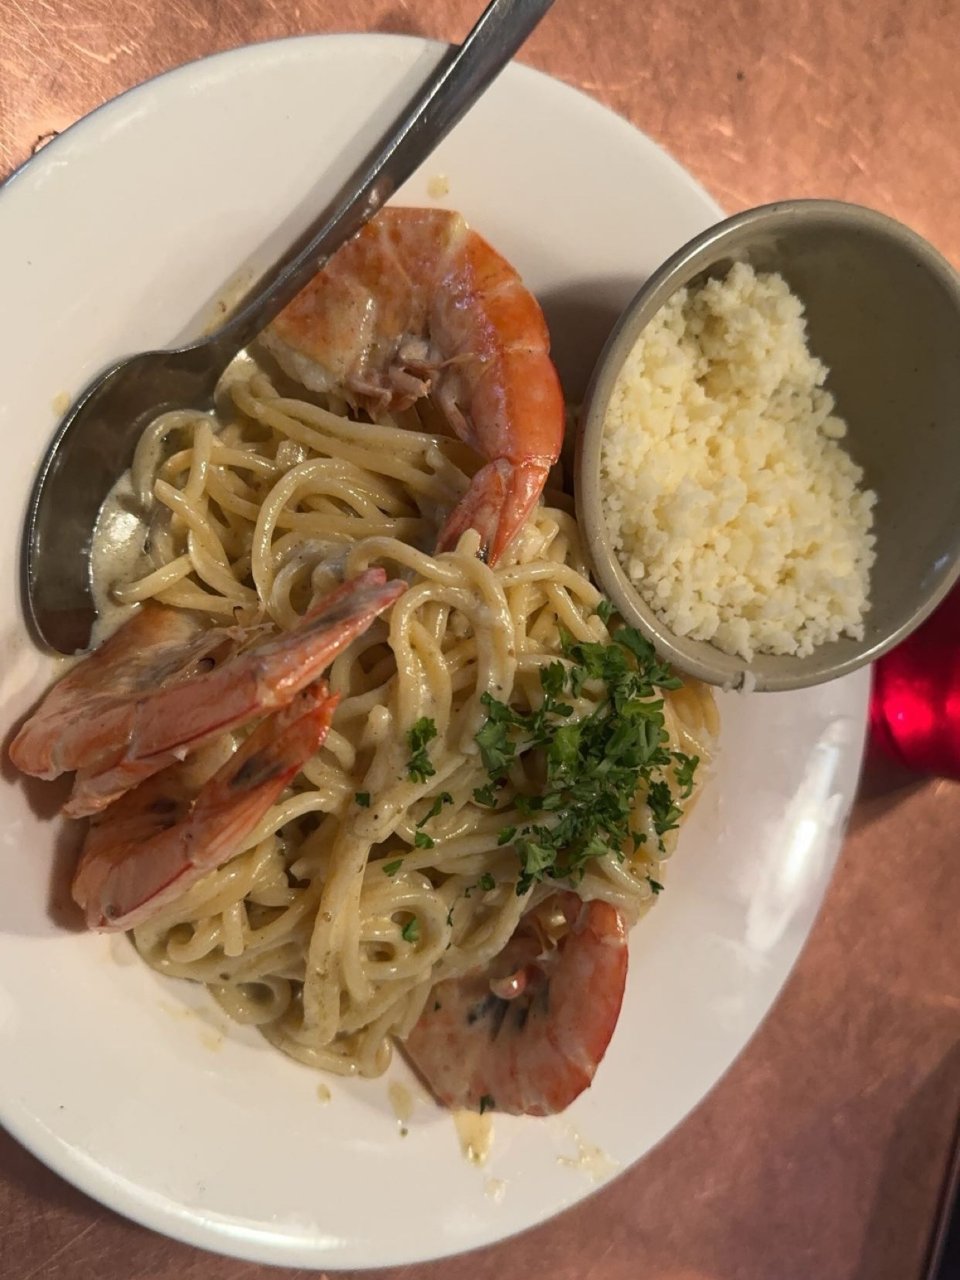 Shrimp pasta